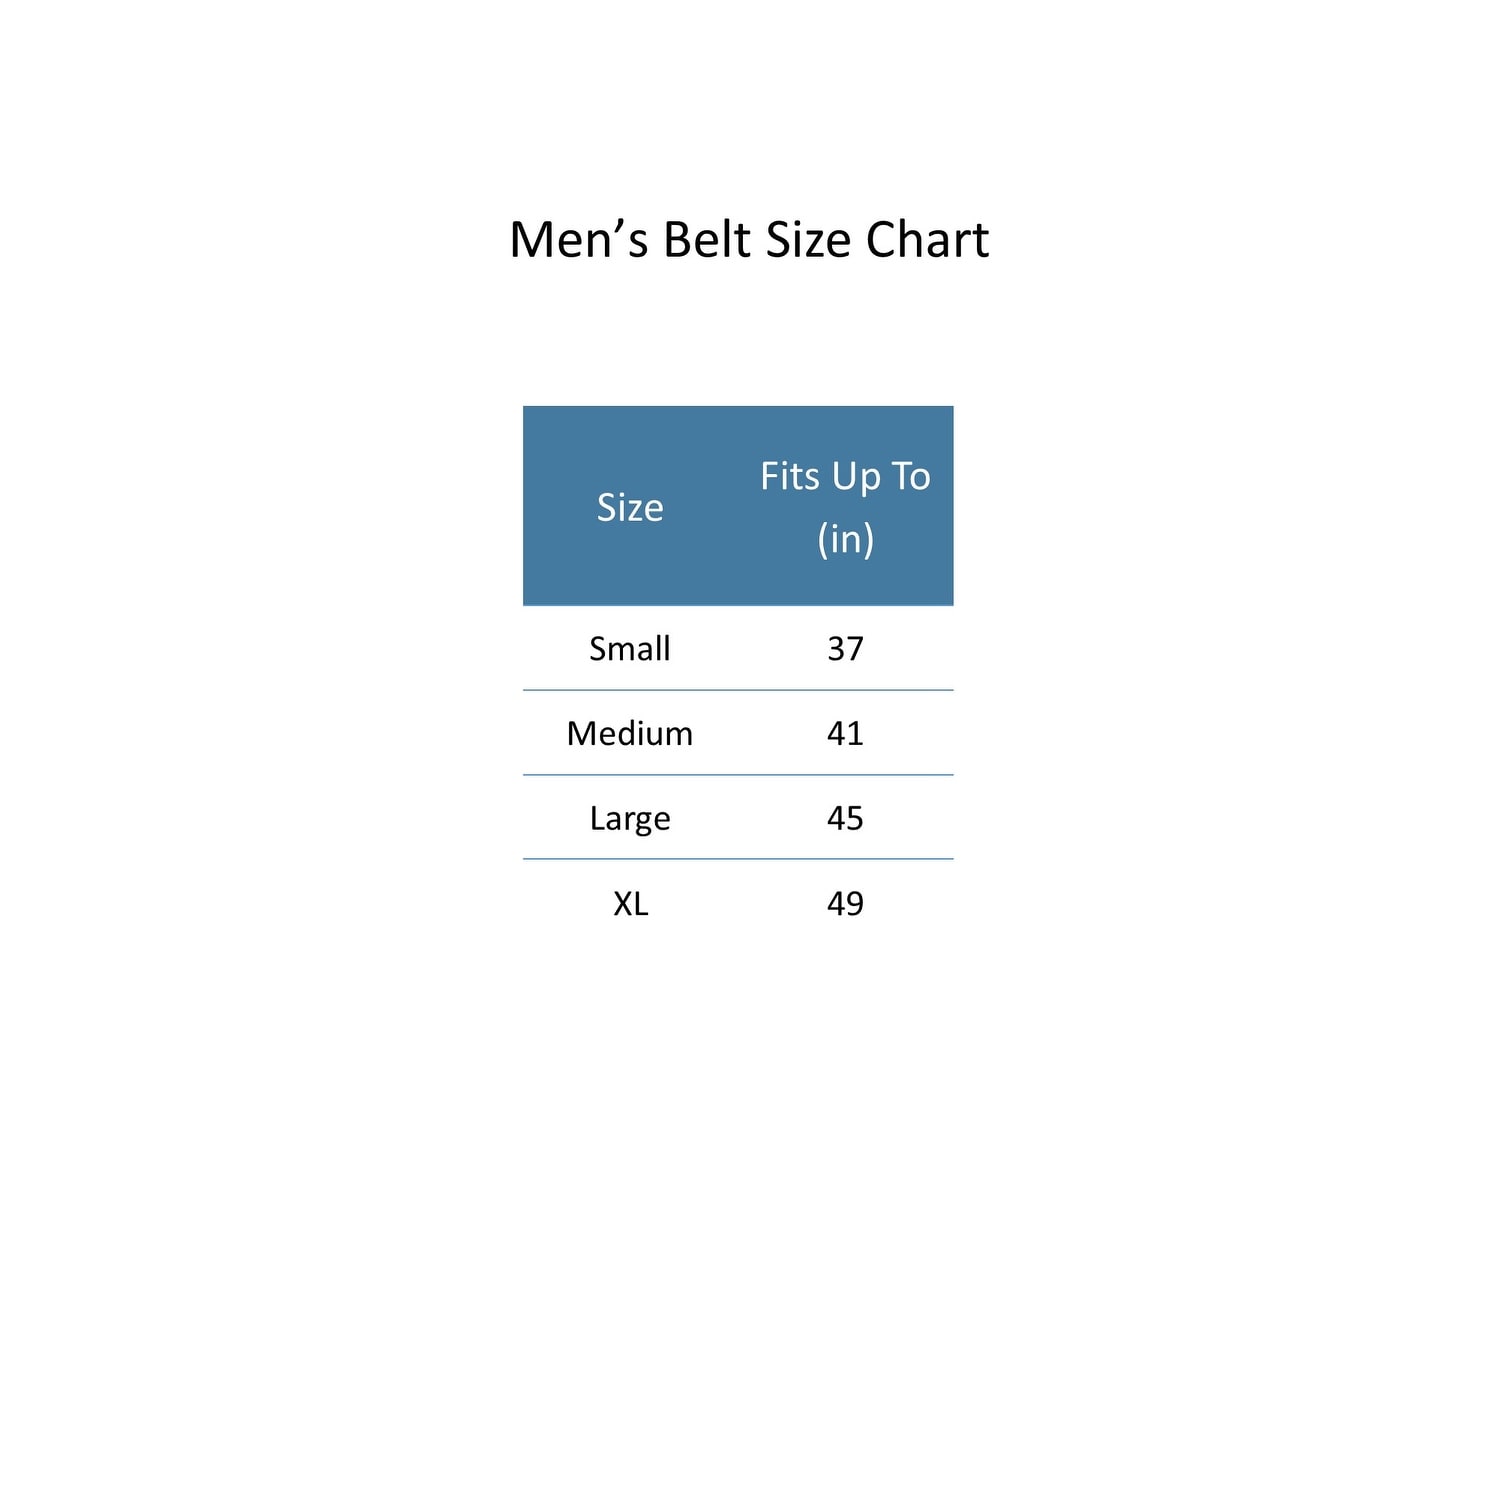 levis belt size chart